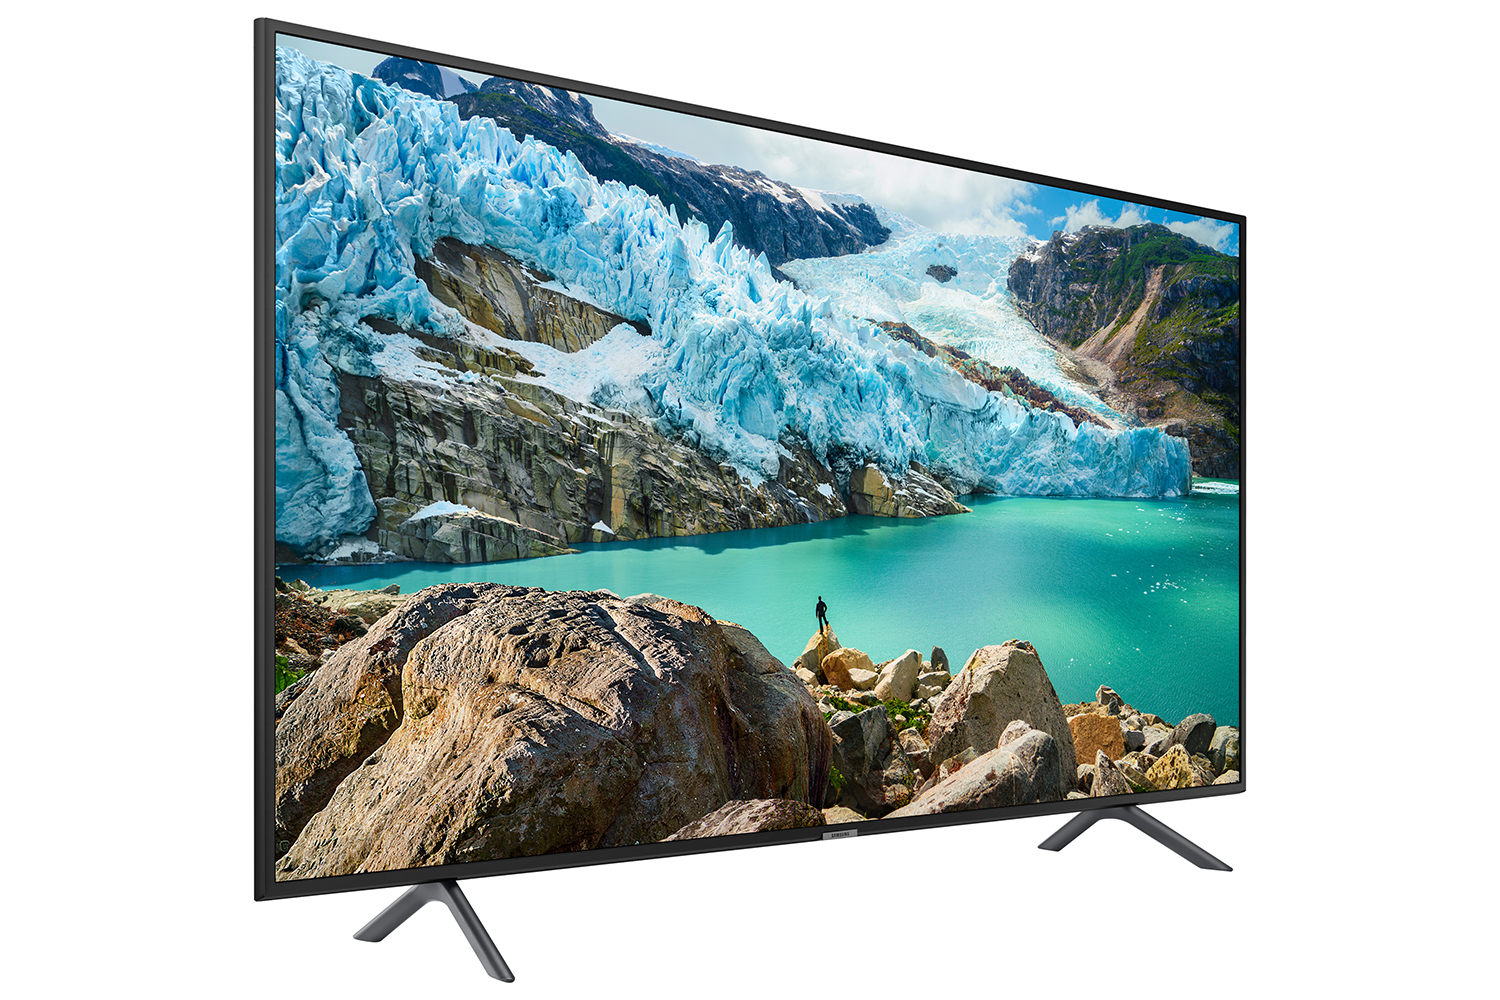 Samsung 75 inch RU8000 4k uhd Television